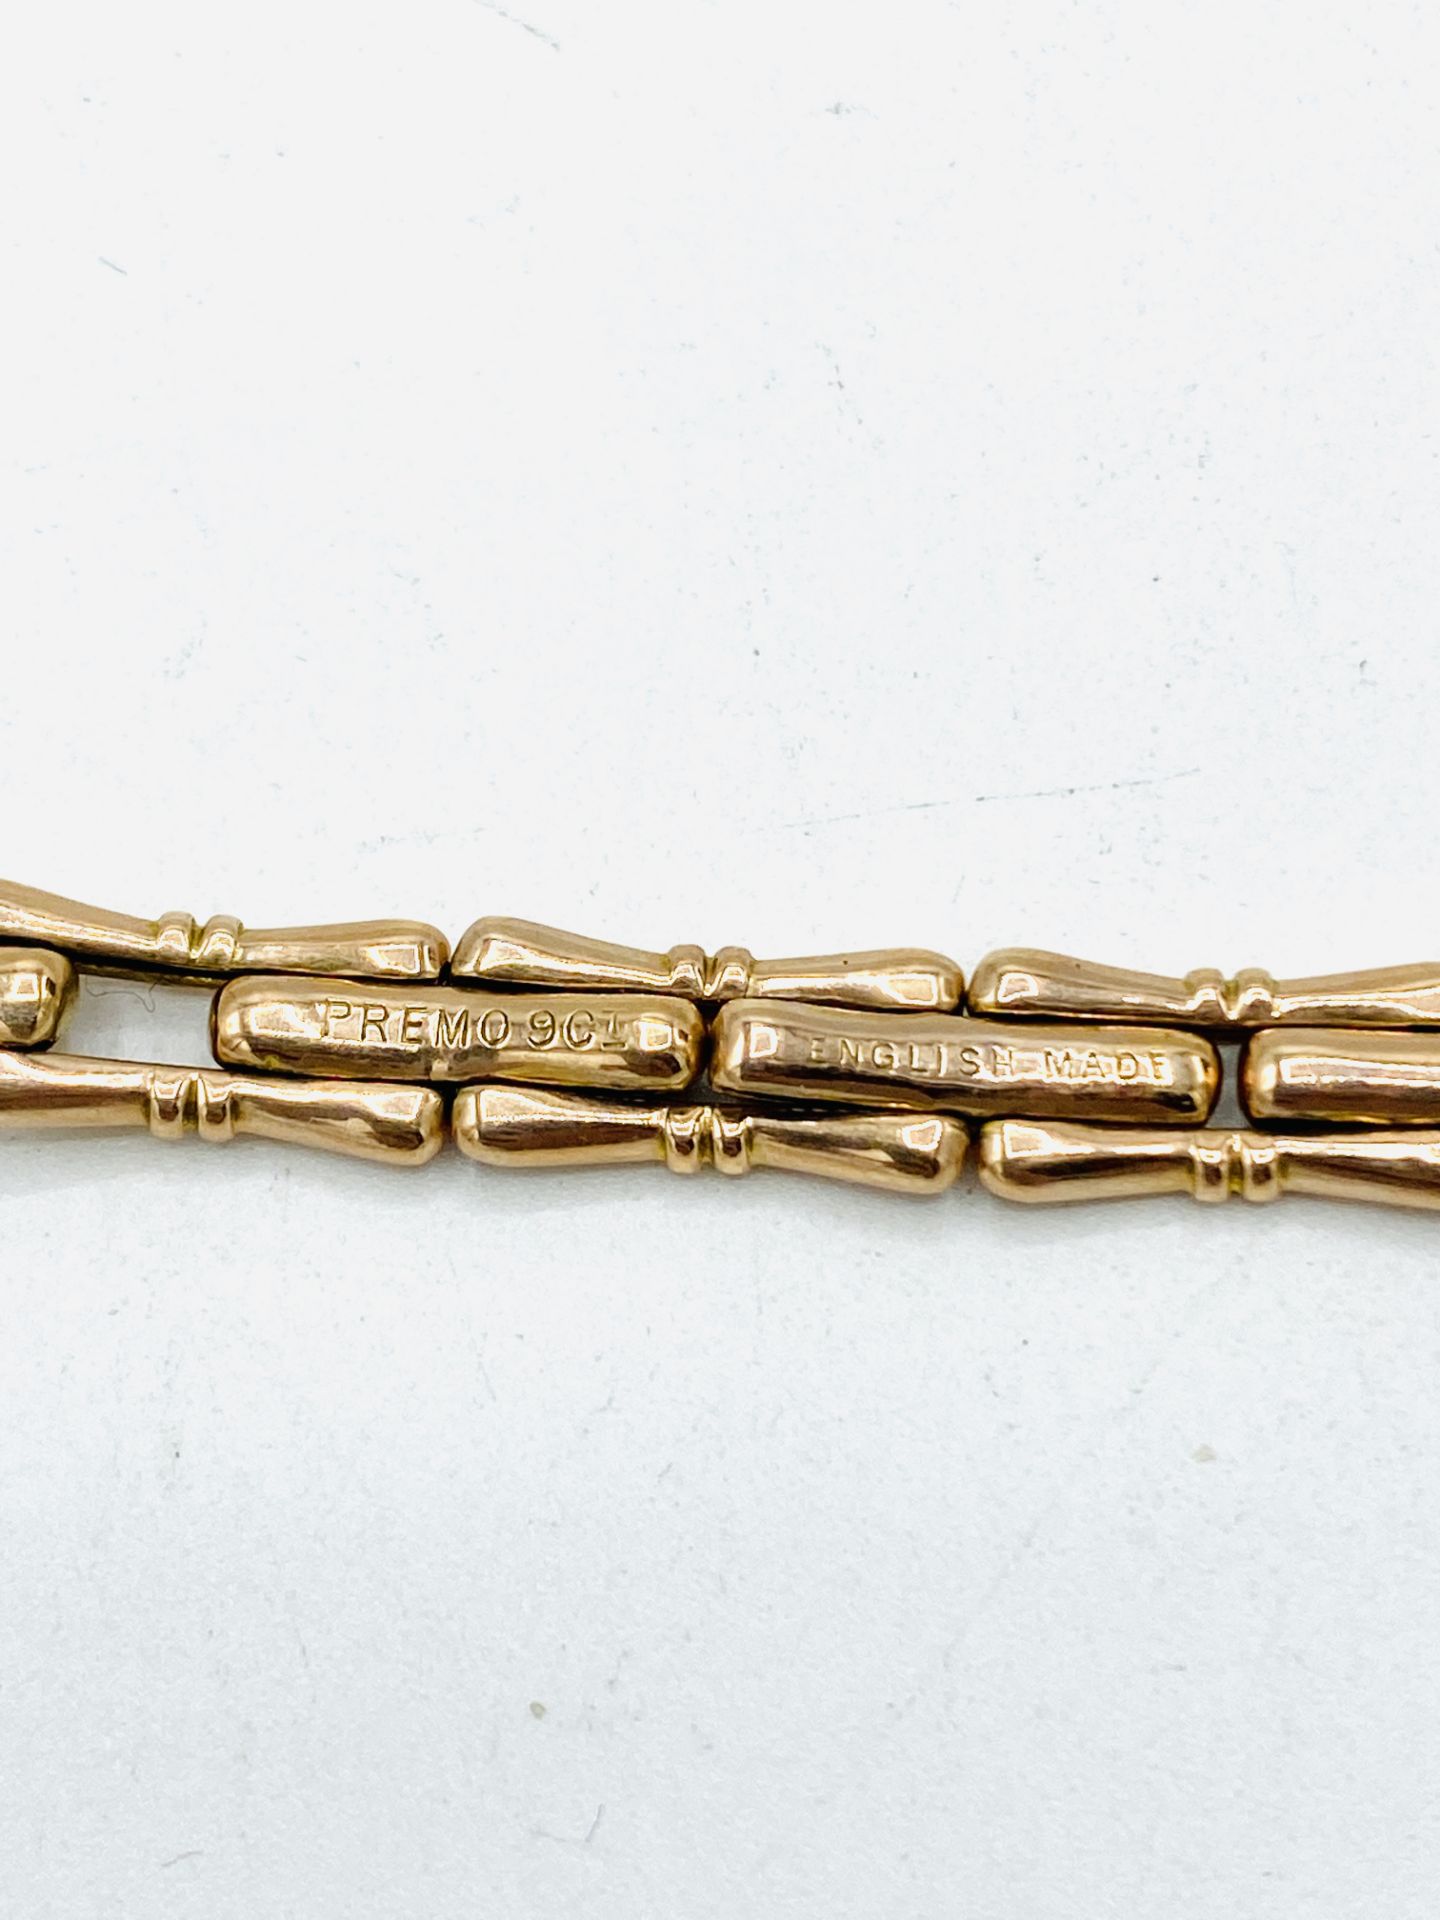 9ct gold watch bracelet - Bild 3 aus 3